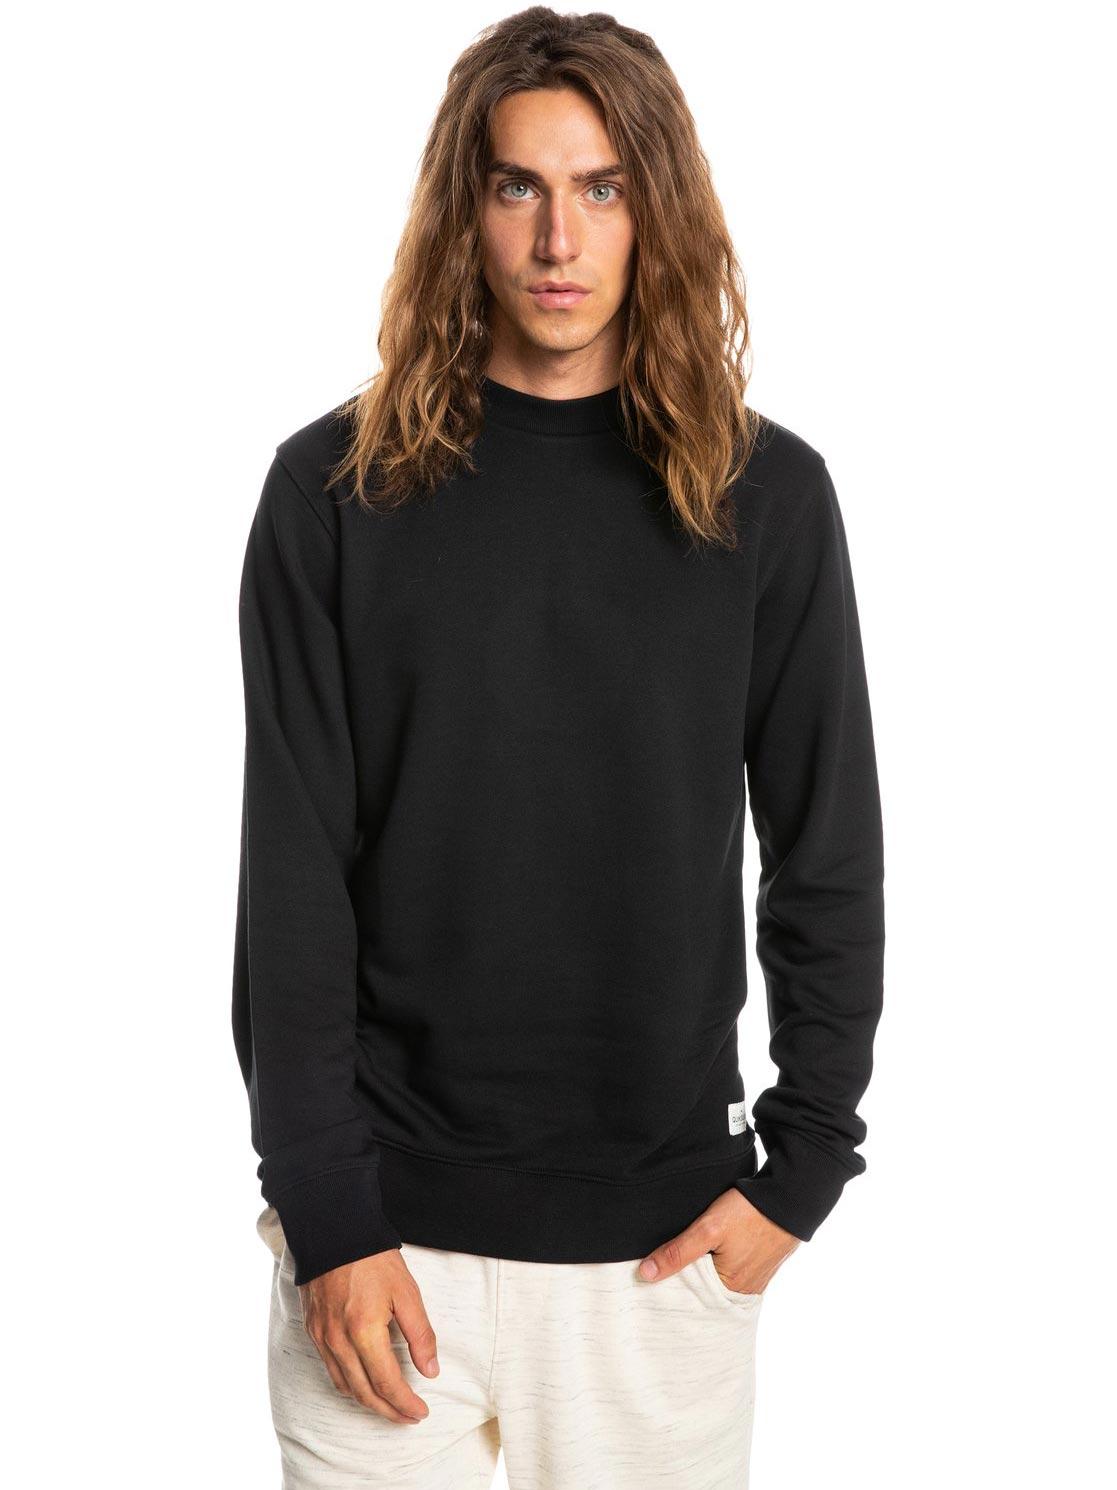 Slike QUIKSILVER Muški džemper Essentials crni